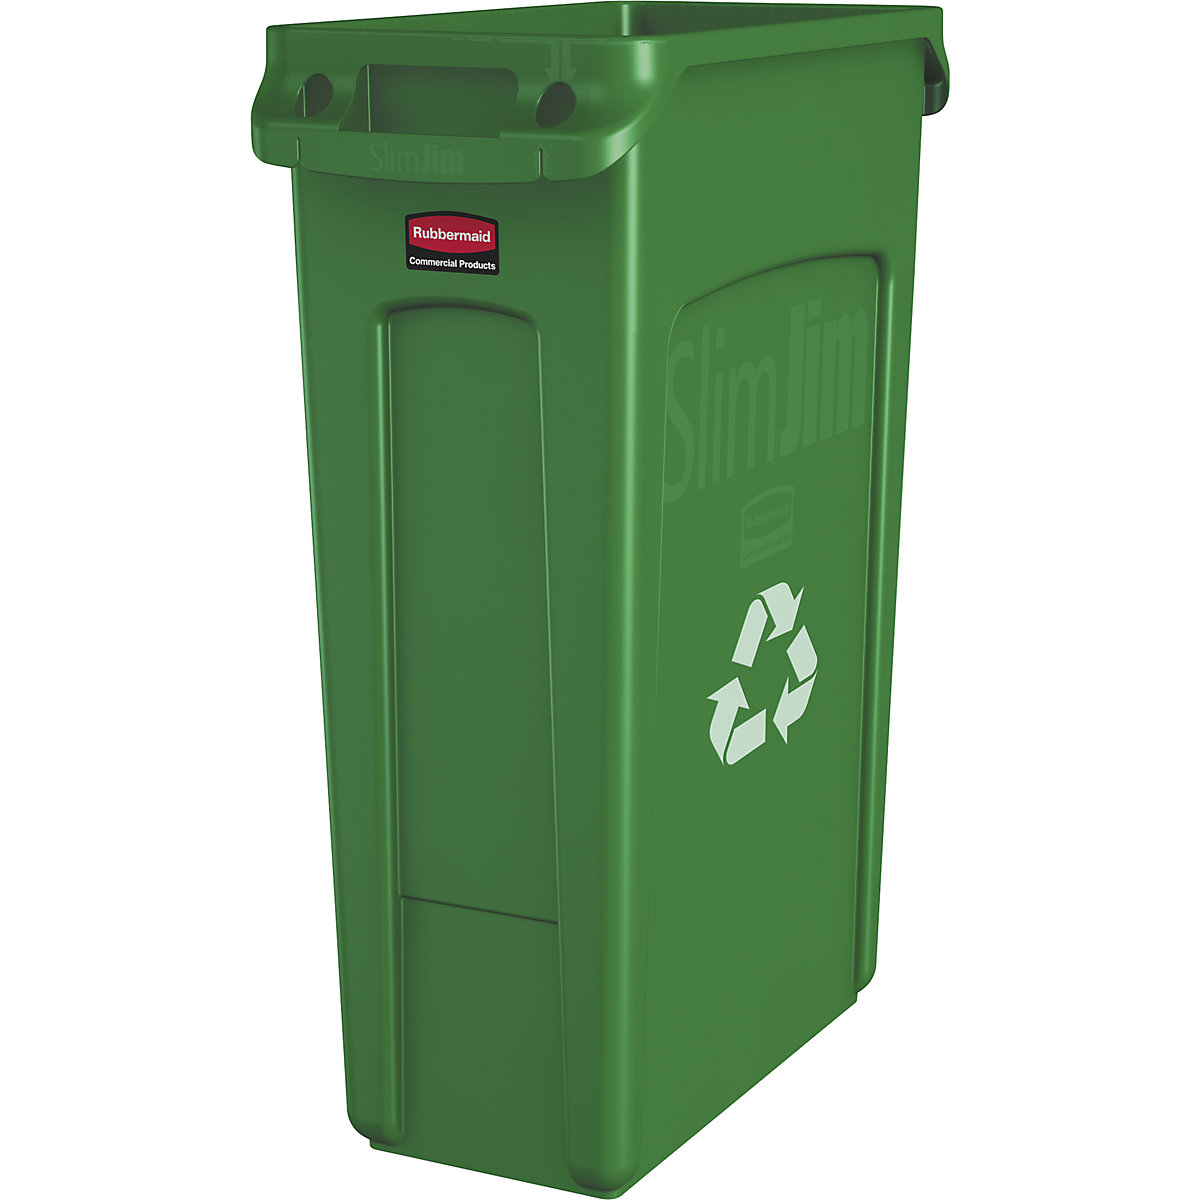 Verzamelaar voor kringloopmateriaal/afvalbak SLIM JIM® – Rubbermaid, volume 87 l, met ventilatiekanalen, groen, met recyclingssymbool, vanaf 10 stuks